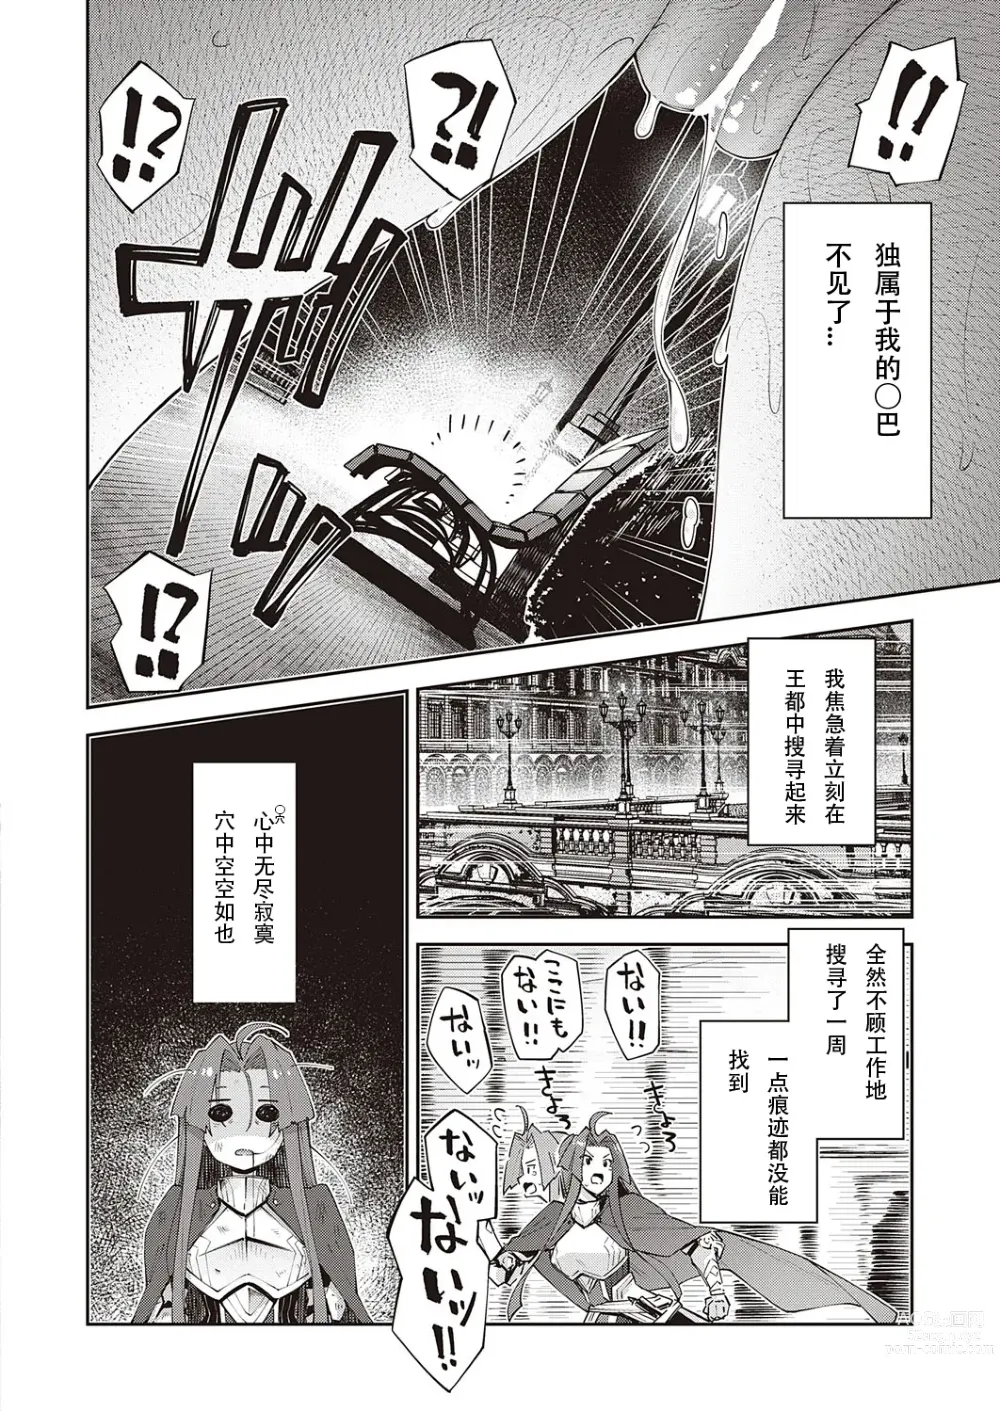 Page 18 of manga 既然来了异世界就用色批技能来全力讴歌 第8枪